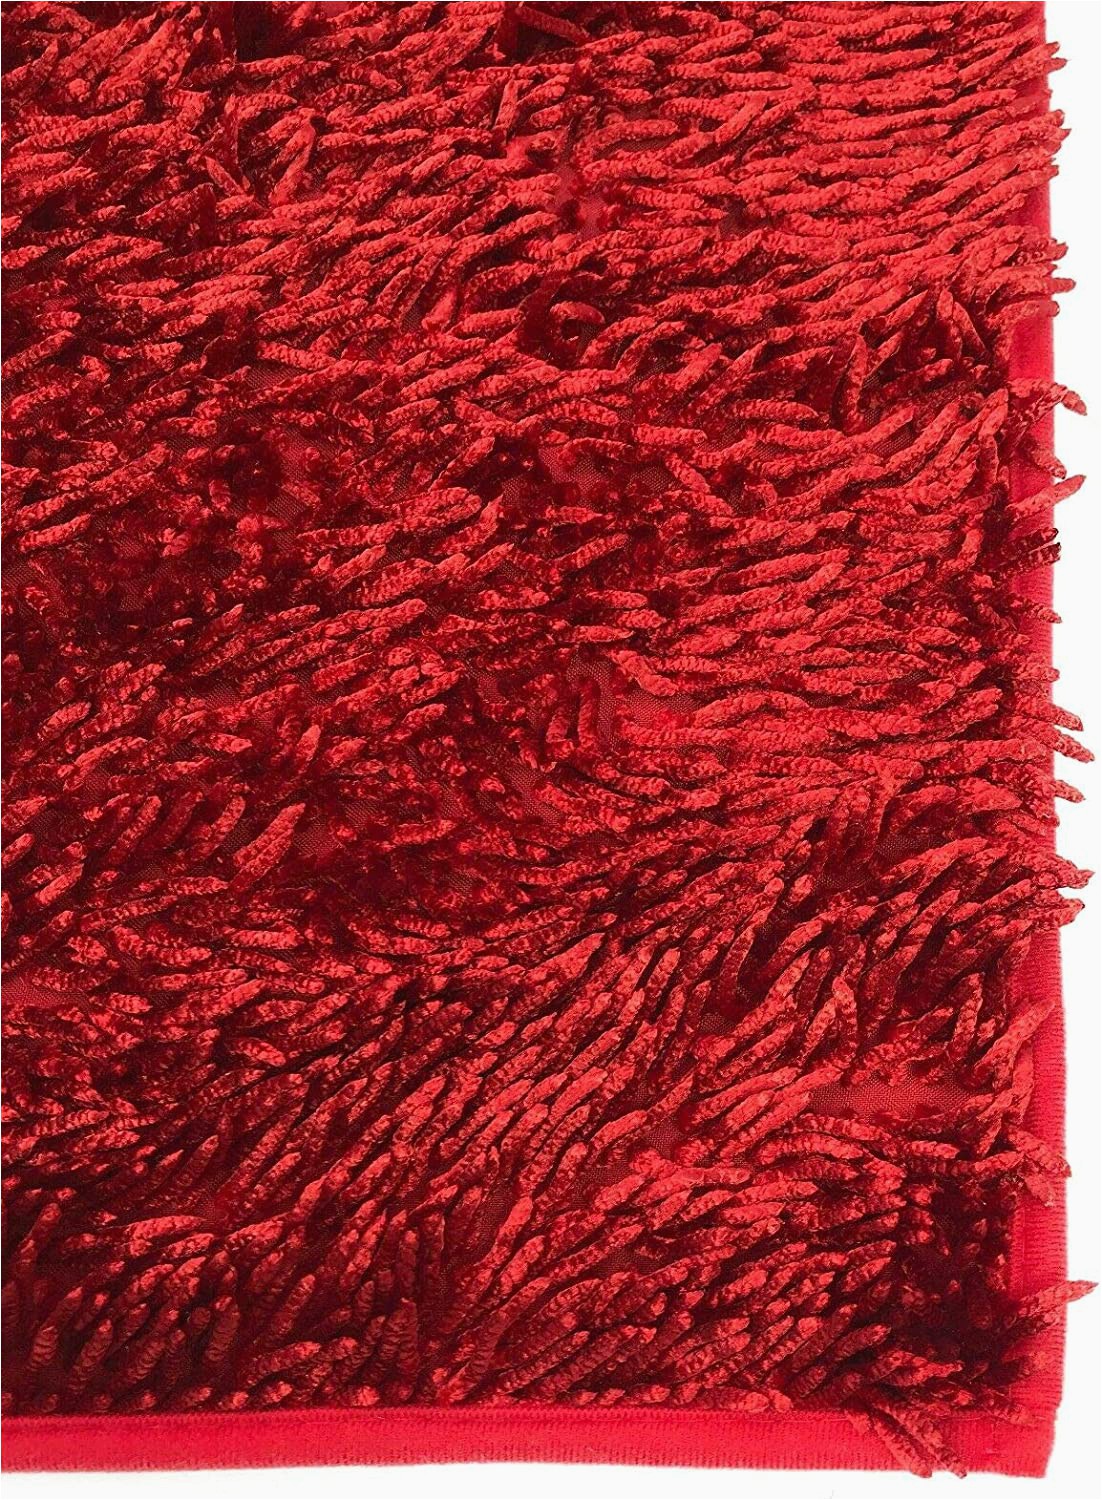 Cheap Red Bathroom Rugs Cushion Mania Sparkle Chenille Bath & Pedestal Mat Sets soft Bathroom Rugs Anti Slip Red